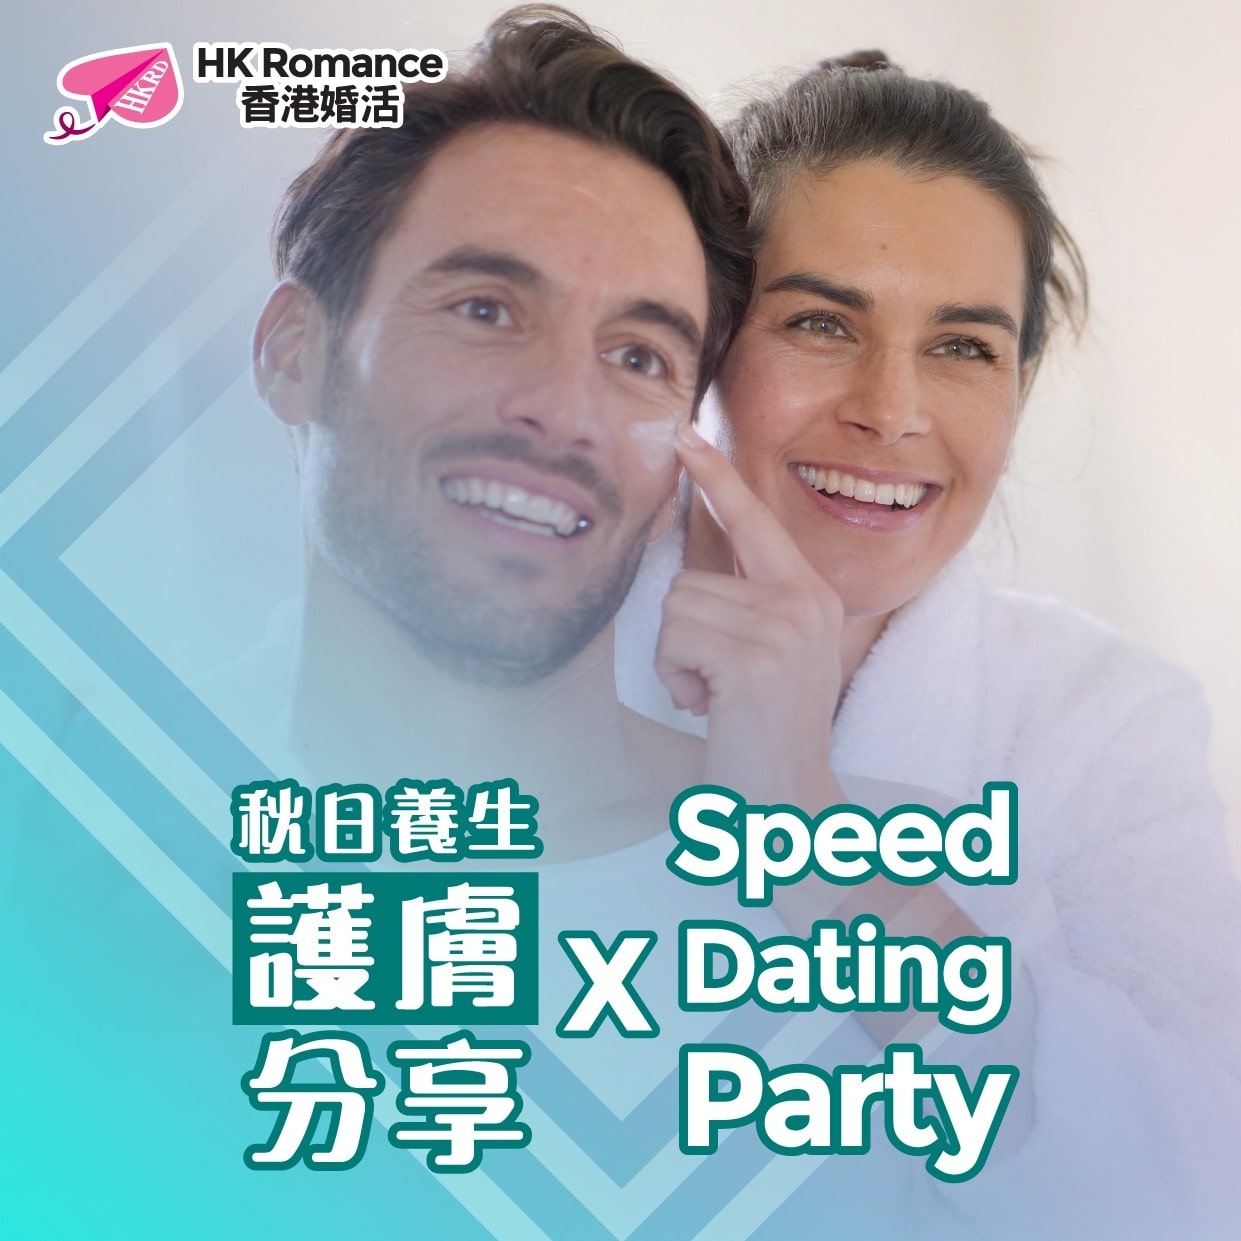 (完滿舉行)秋日養生護膚分享 - 2019年10月25日(FRI) 香港交友約會業協會 Hong Kong Speed Dating Federation - Speed Dating , 一對一約會, 單對單約會, 約會行業, 約會配對